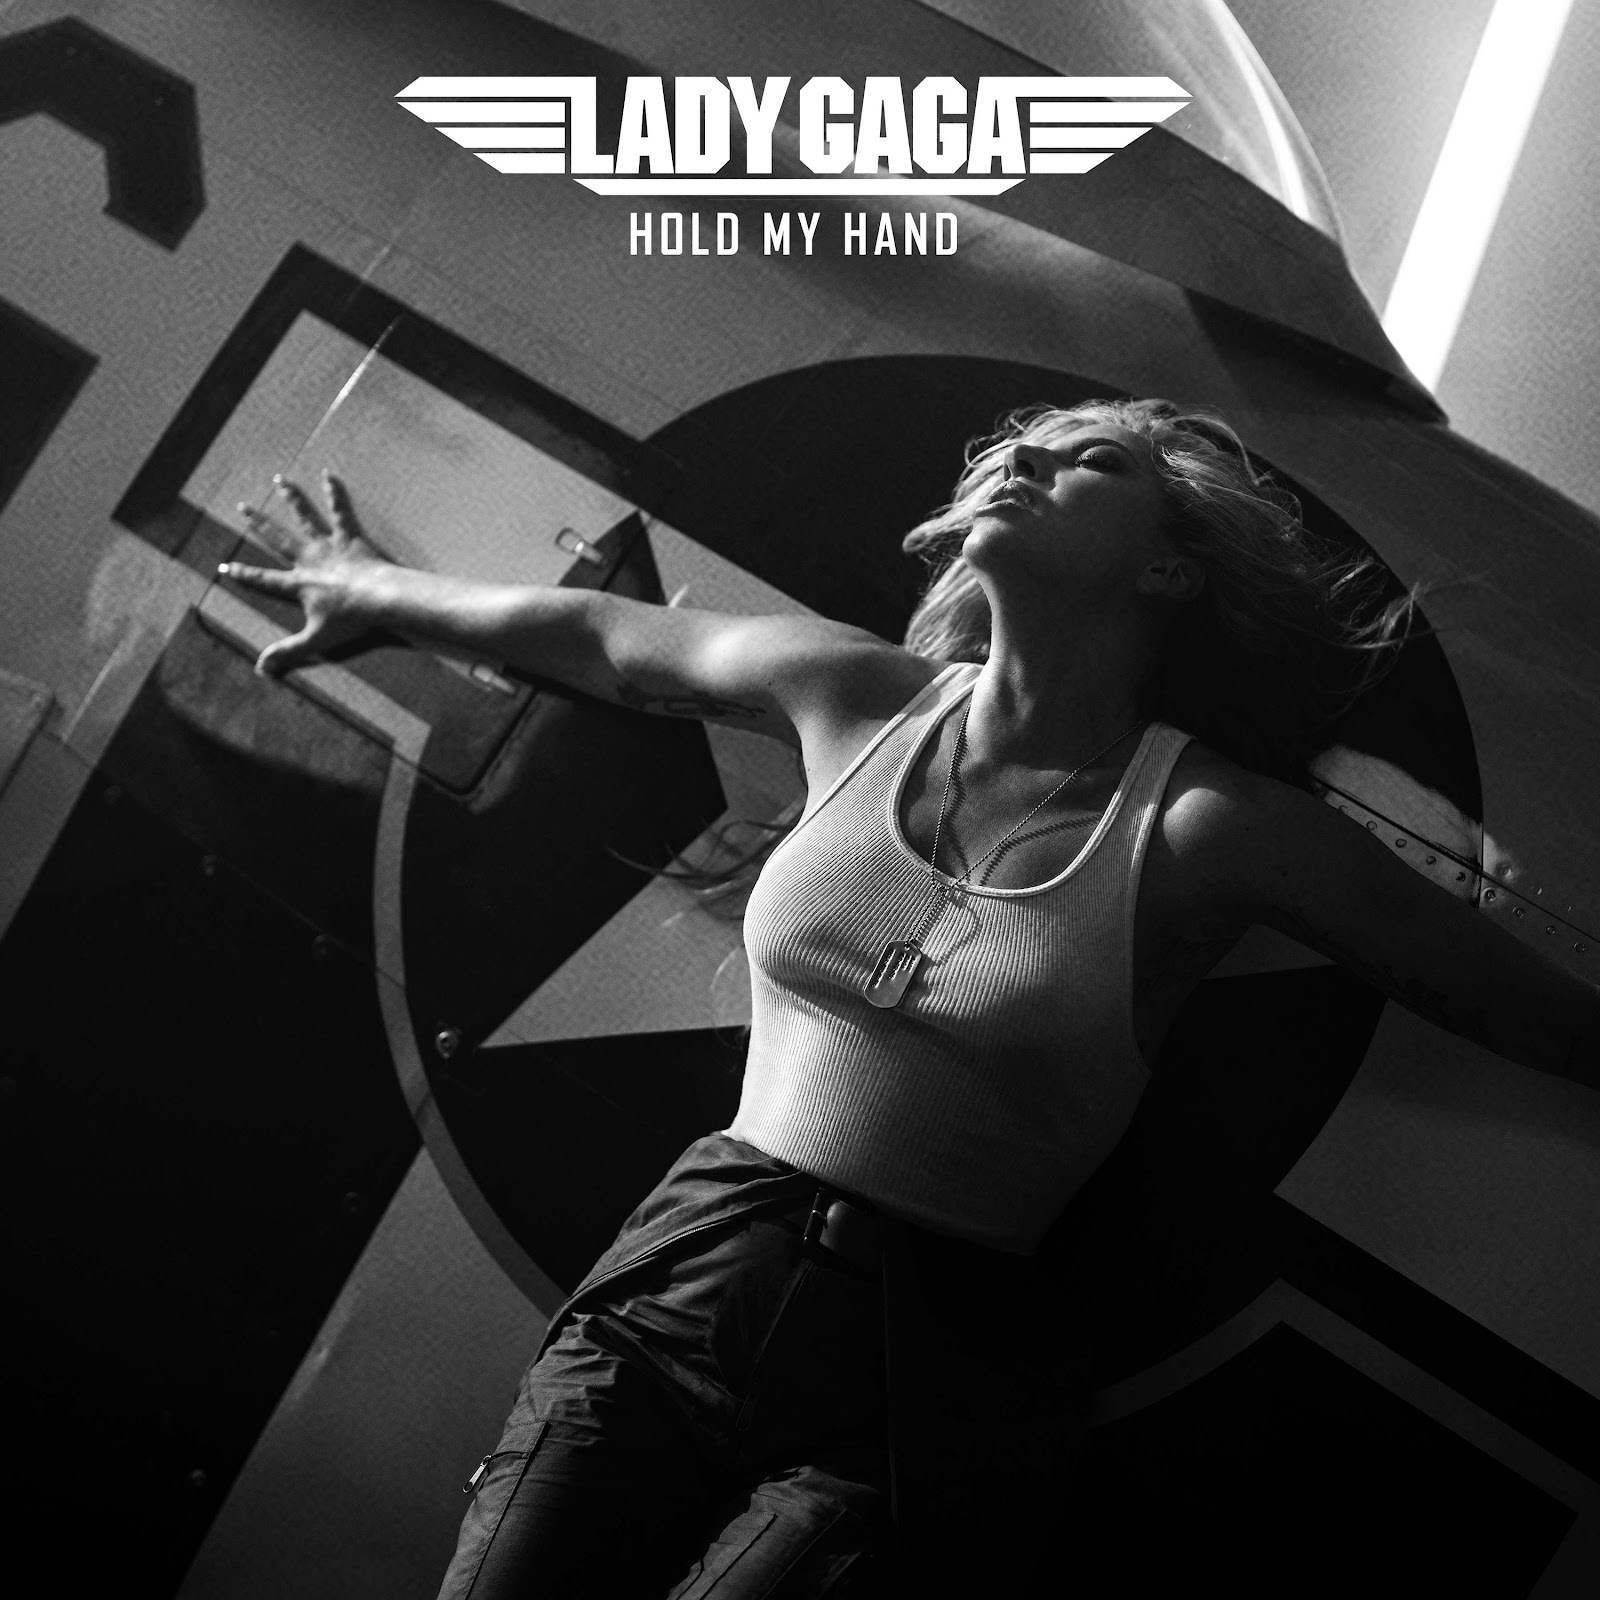  'Siêu phẩm' Top Gun có sự góp mặt của Lady Gaga với nhạc phim 'Hold My Hand'